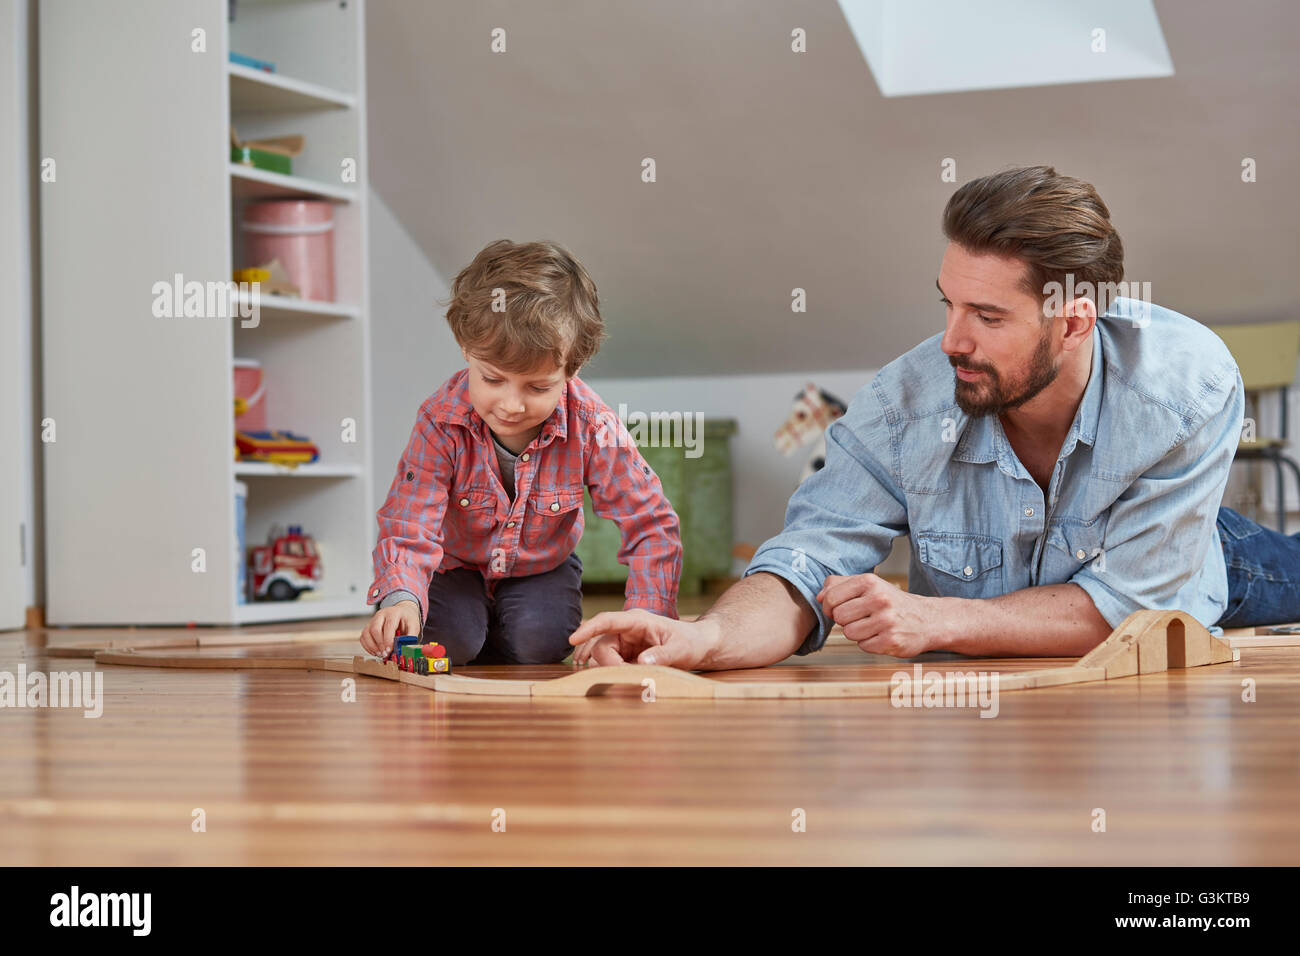 Père et fils jouant avec train jouet en bois Banque D'Images